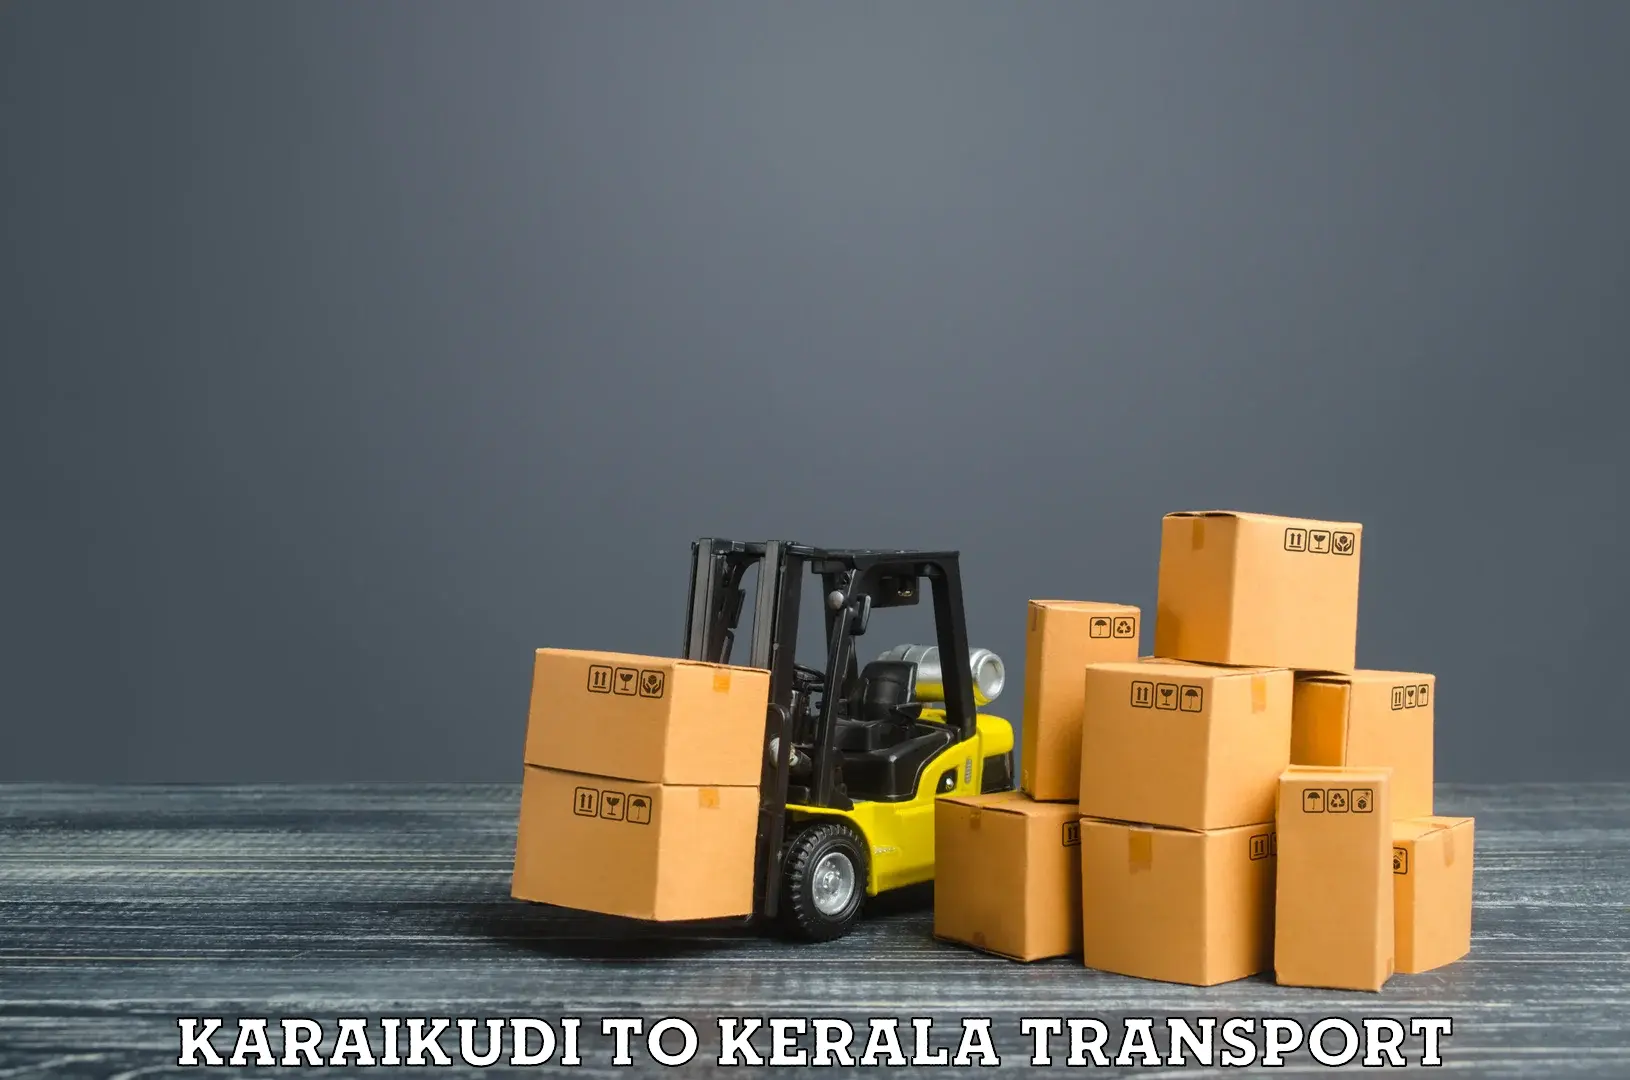 Road transport online services Karaikudi to Kuchi